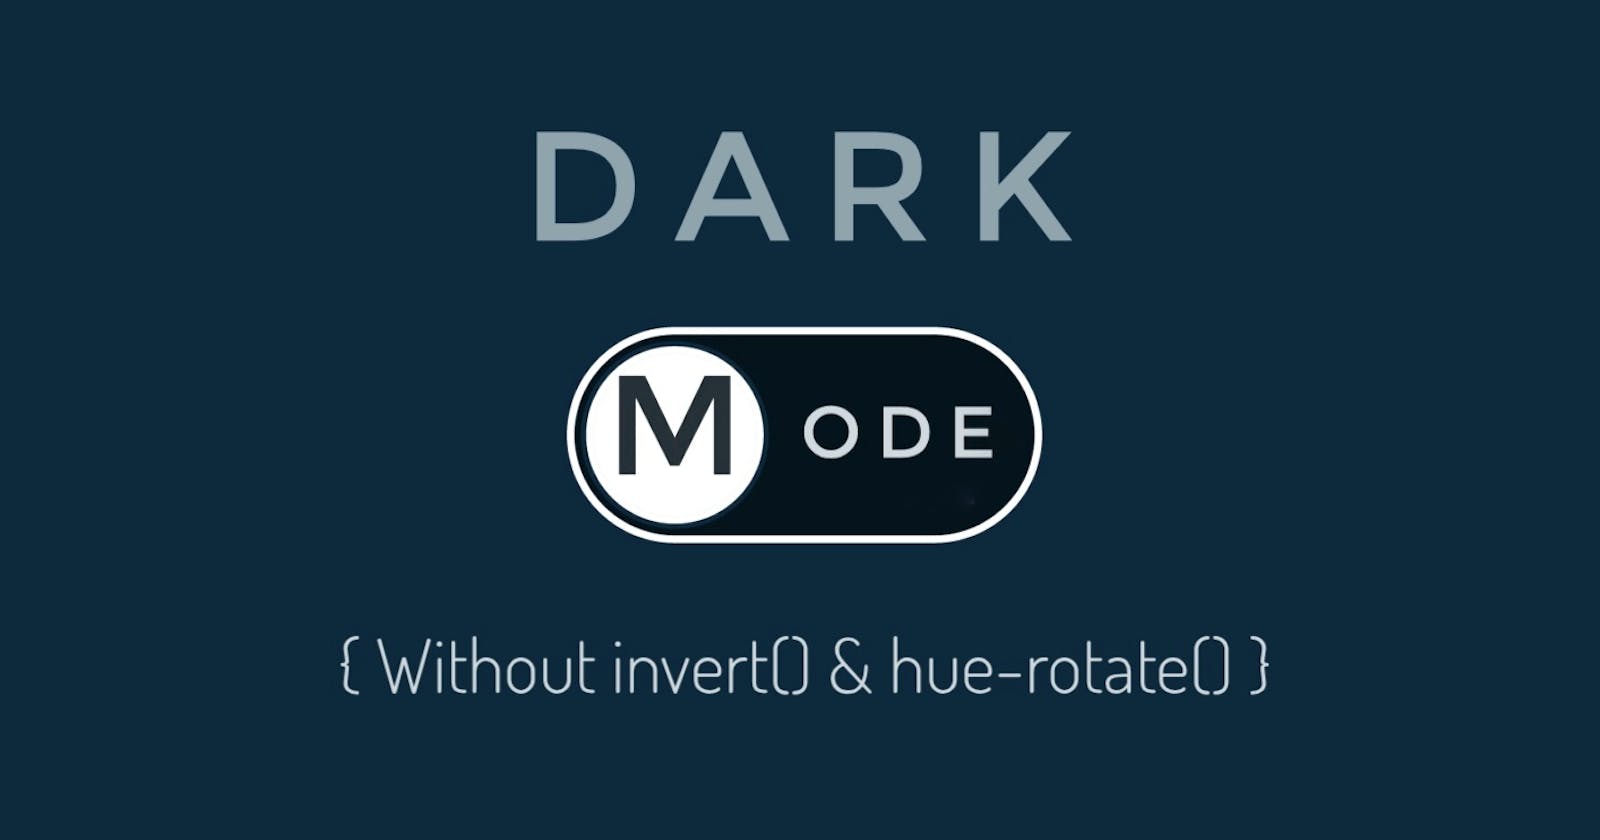 Dark Mode in CSS Part-2